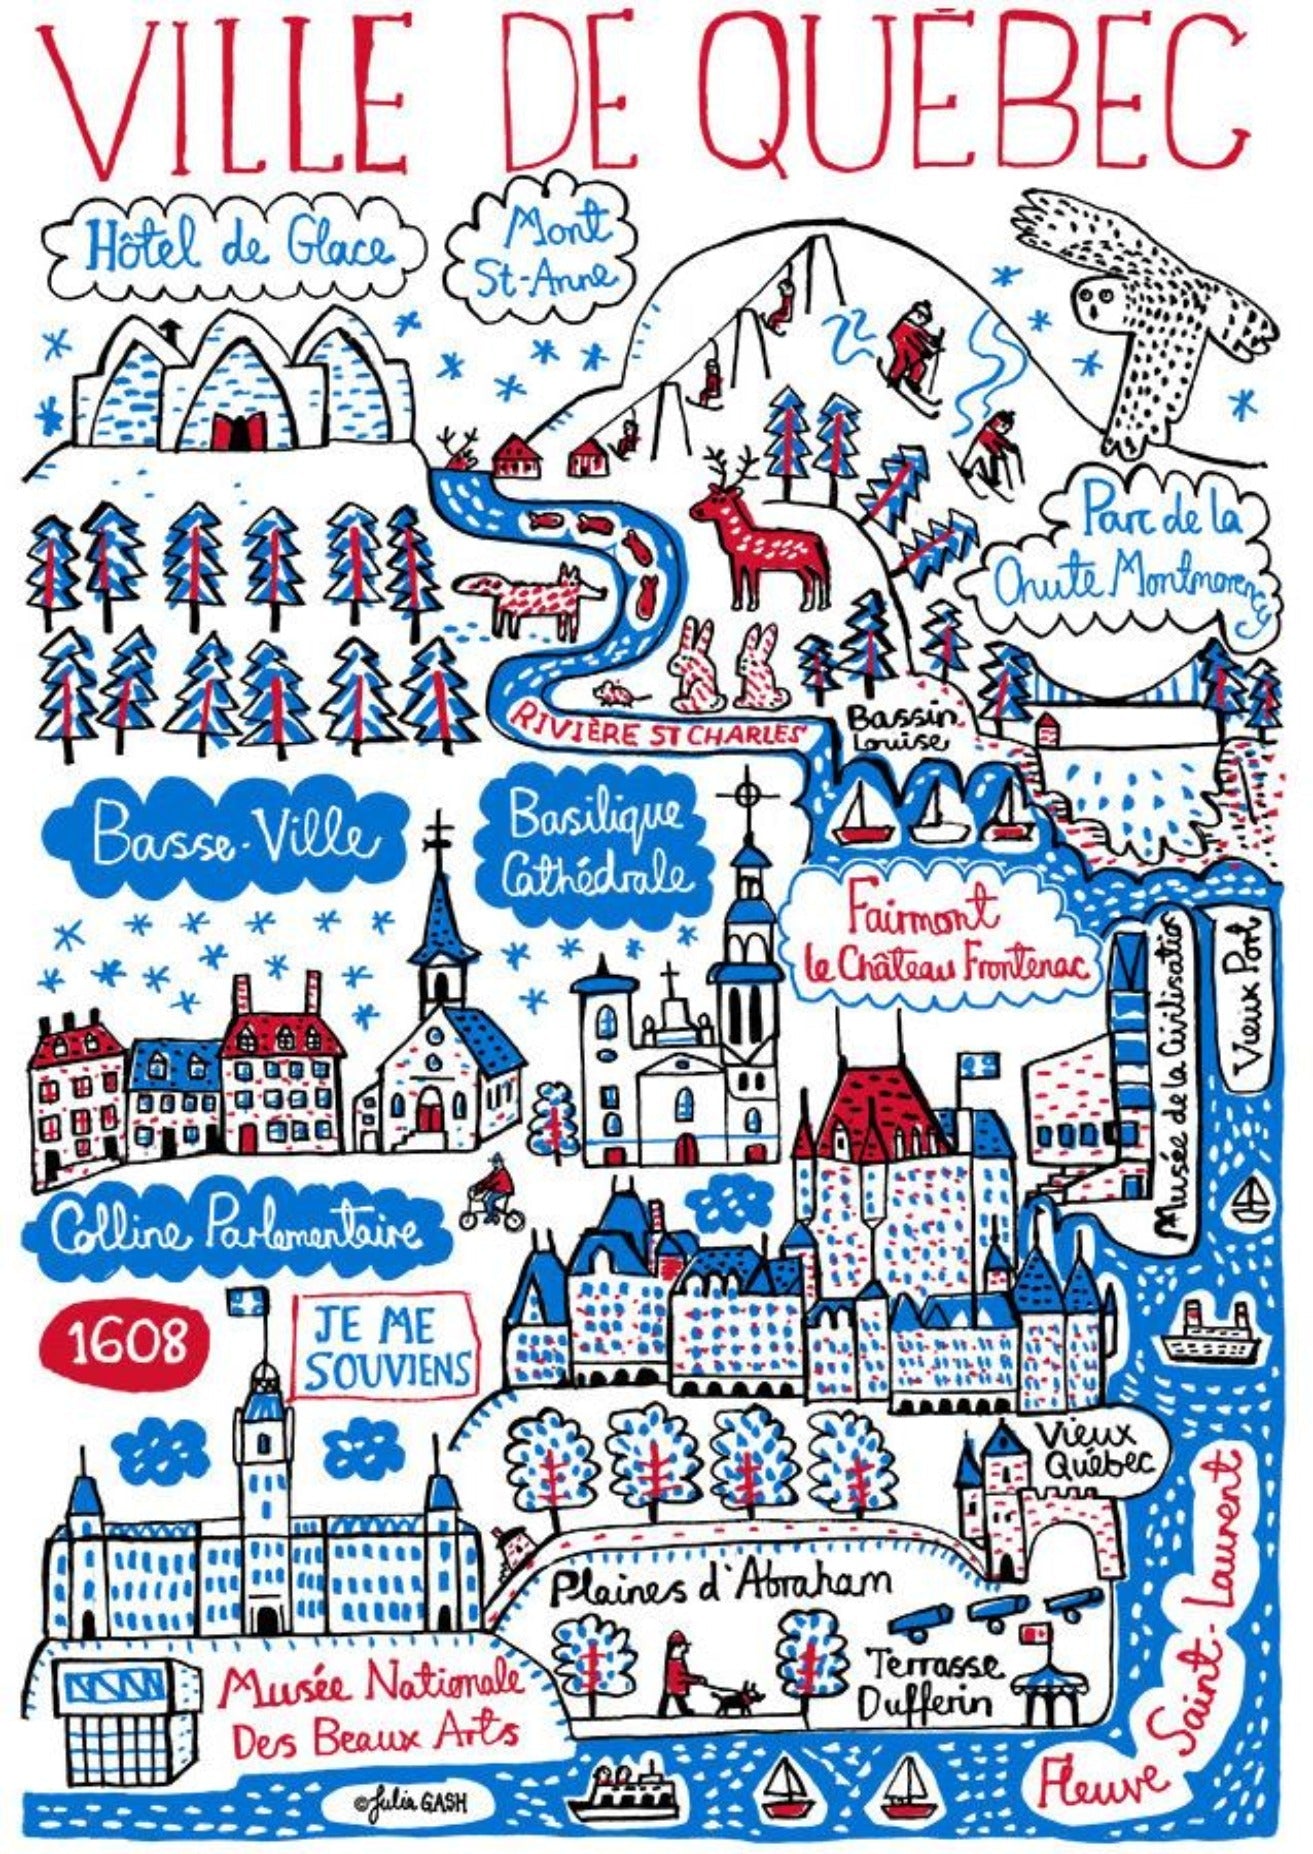 Ville de Quebec Postcard - Julia Gash